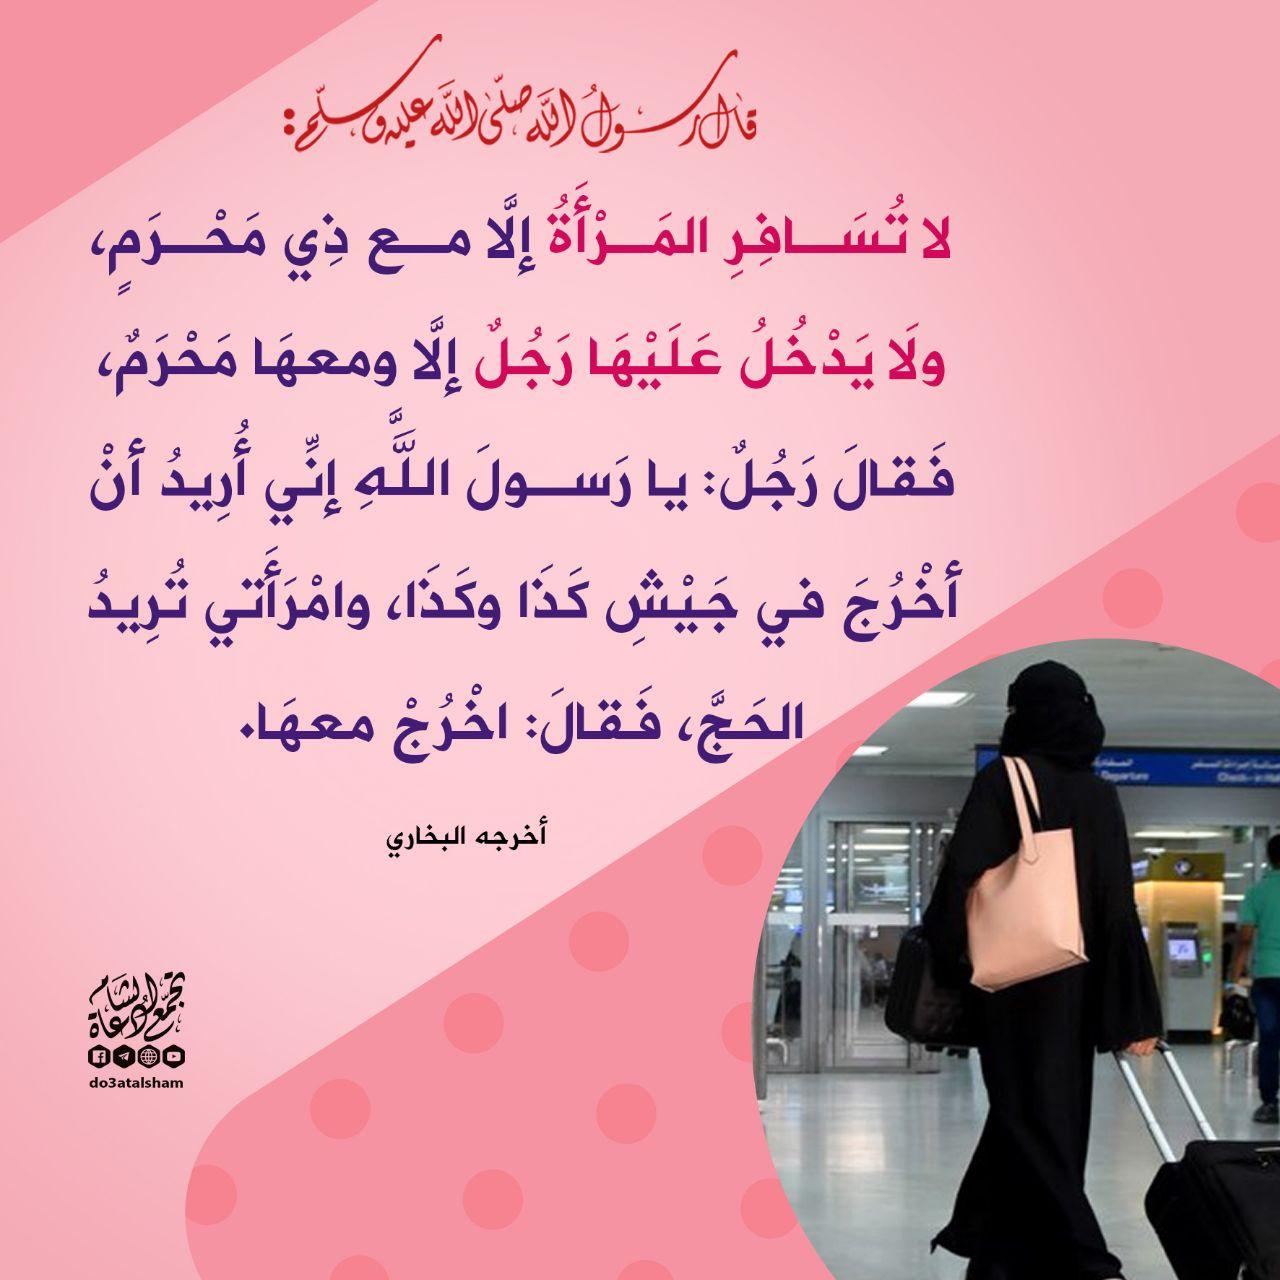 بنت الإسلام - سفر المرأة